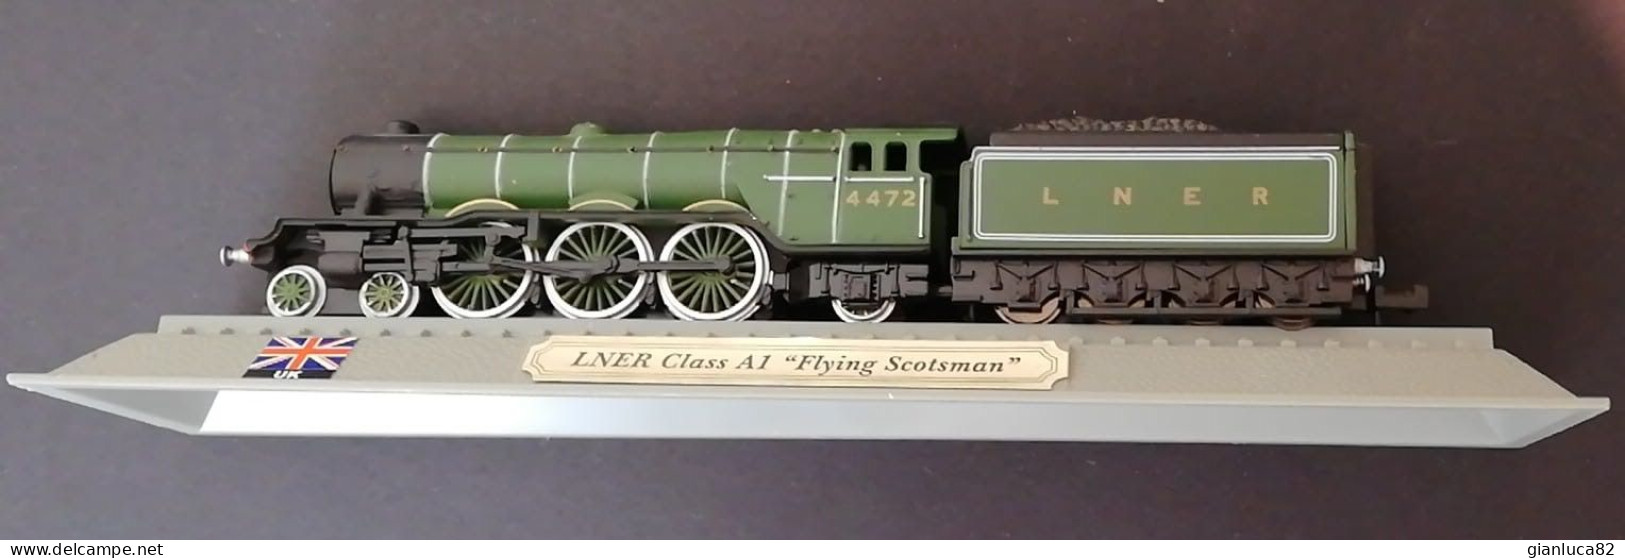 Locomotiva LNER Class A1 Flying Scotsman Come Nuovo (342) Come Da Foto Dimensioni Modellino 14,5x2,5x2 Cm - Locomotive